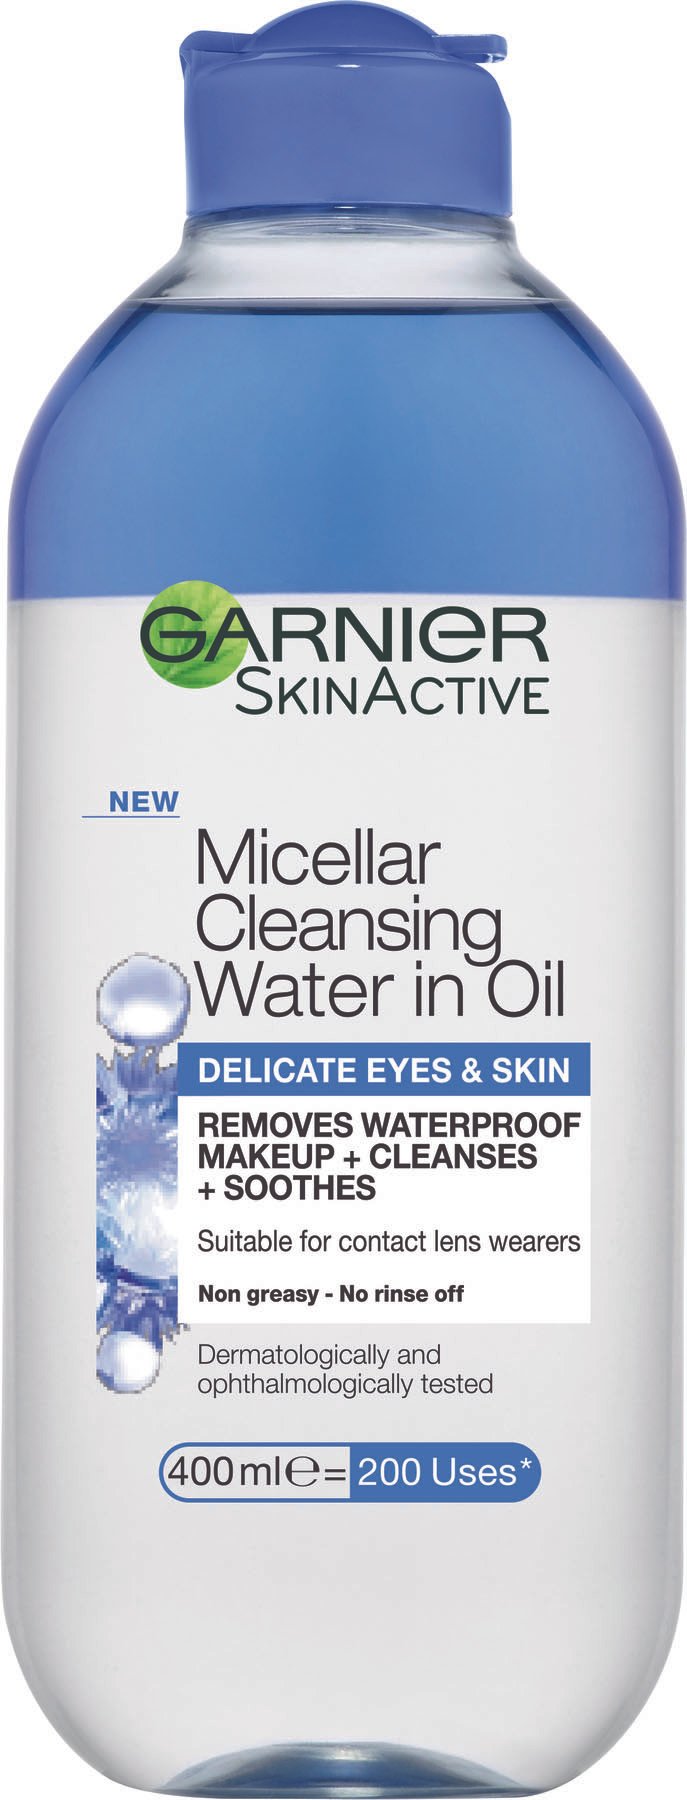 Micellar Cleansing Water in Oil Delicate Eyes & Skin